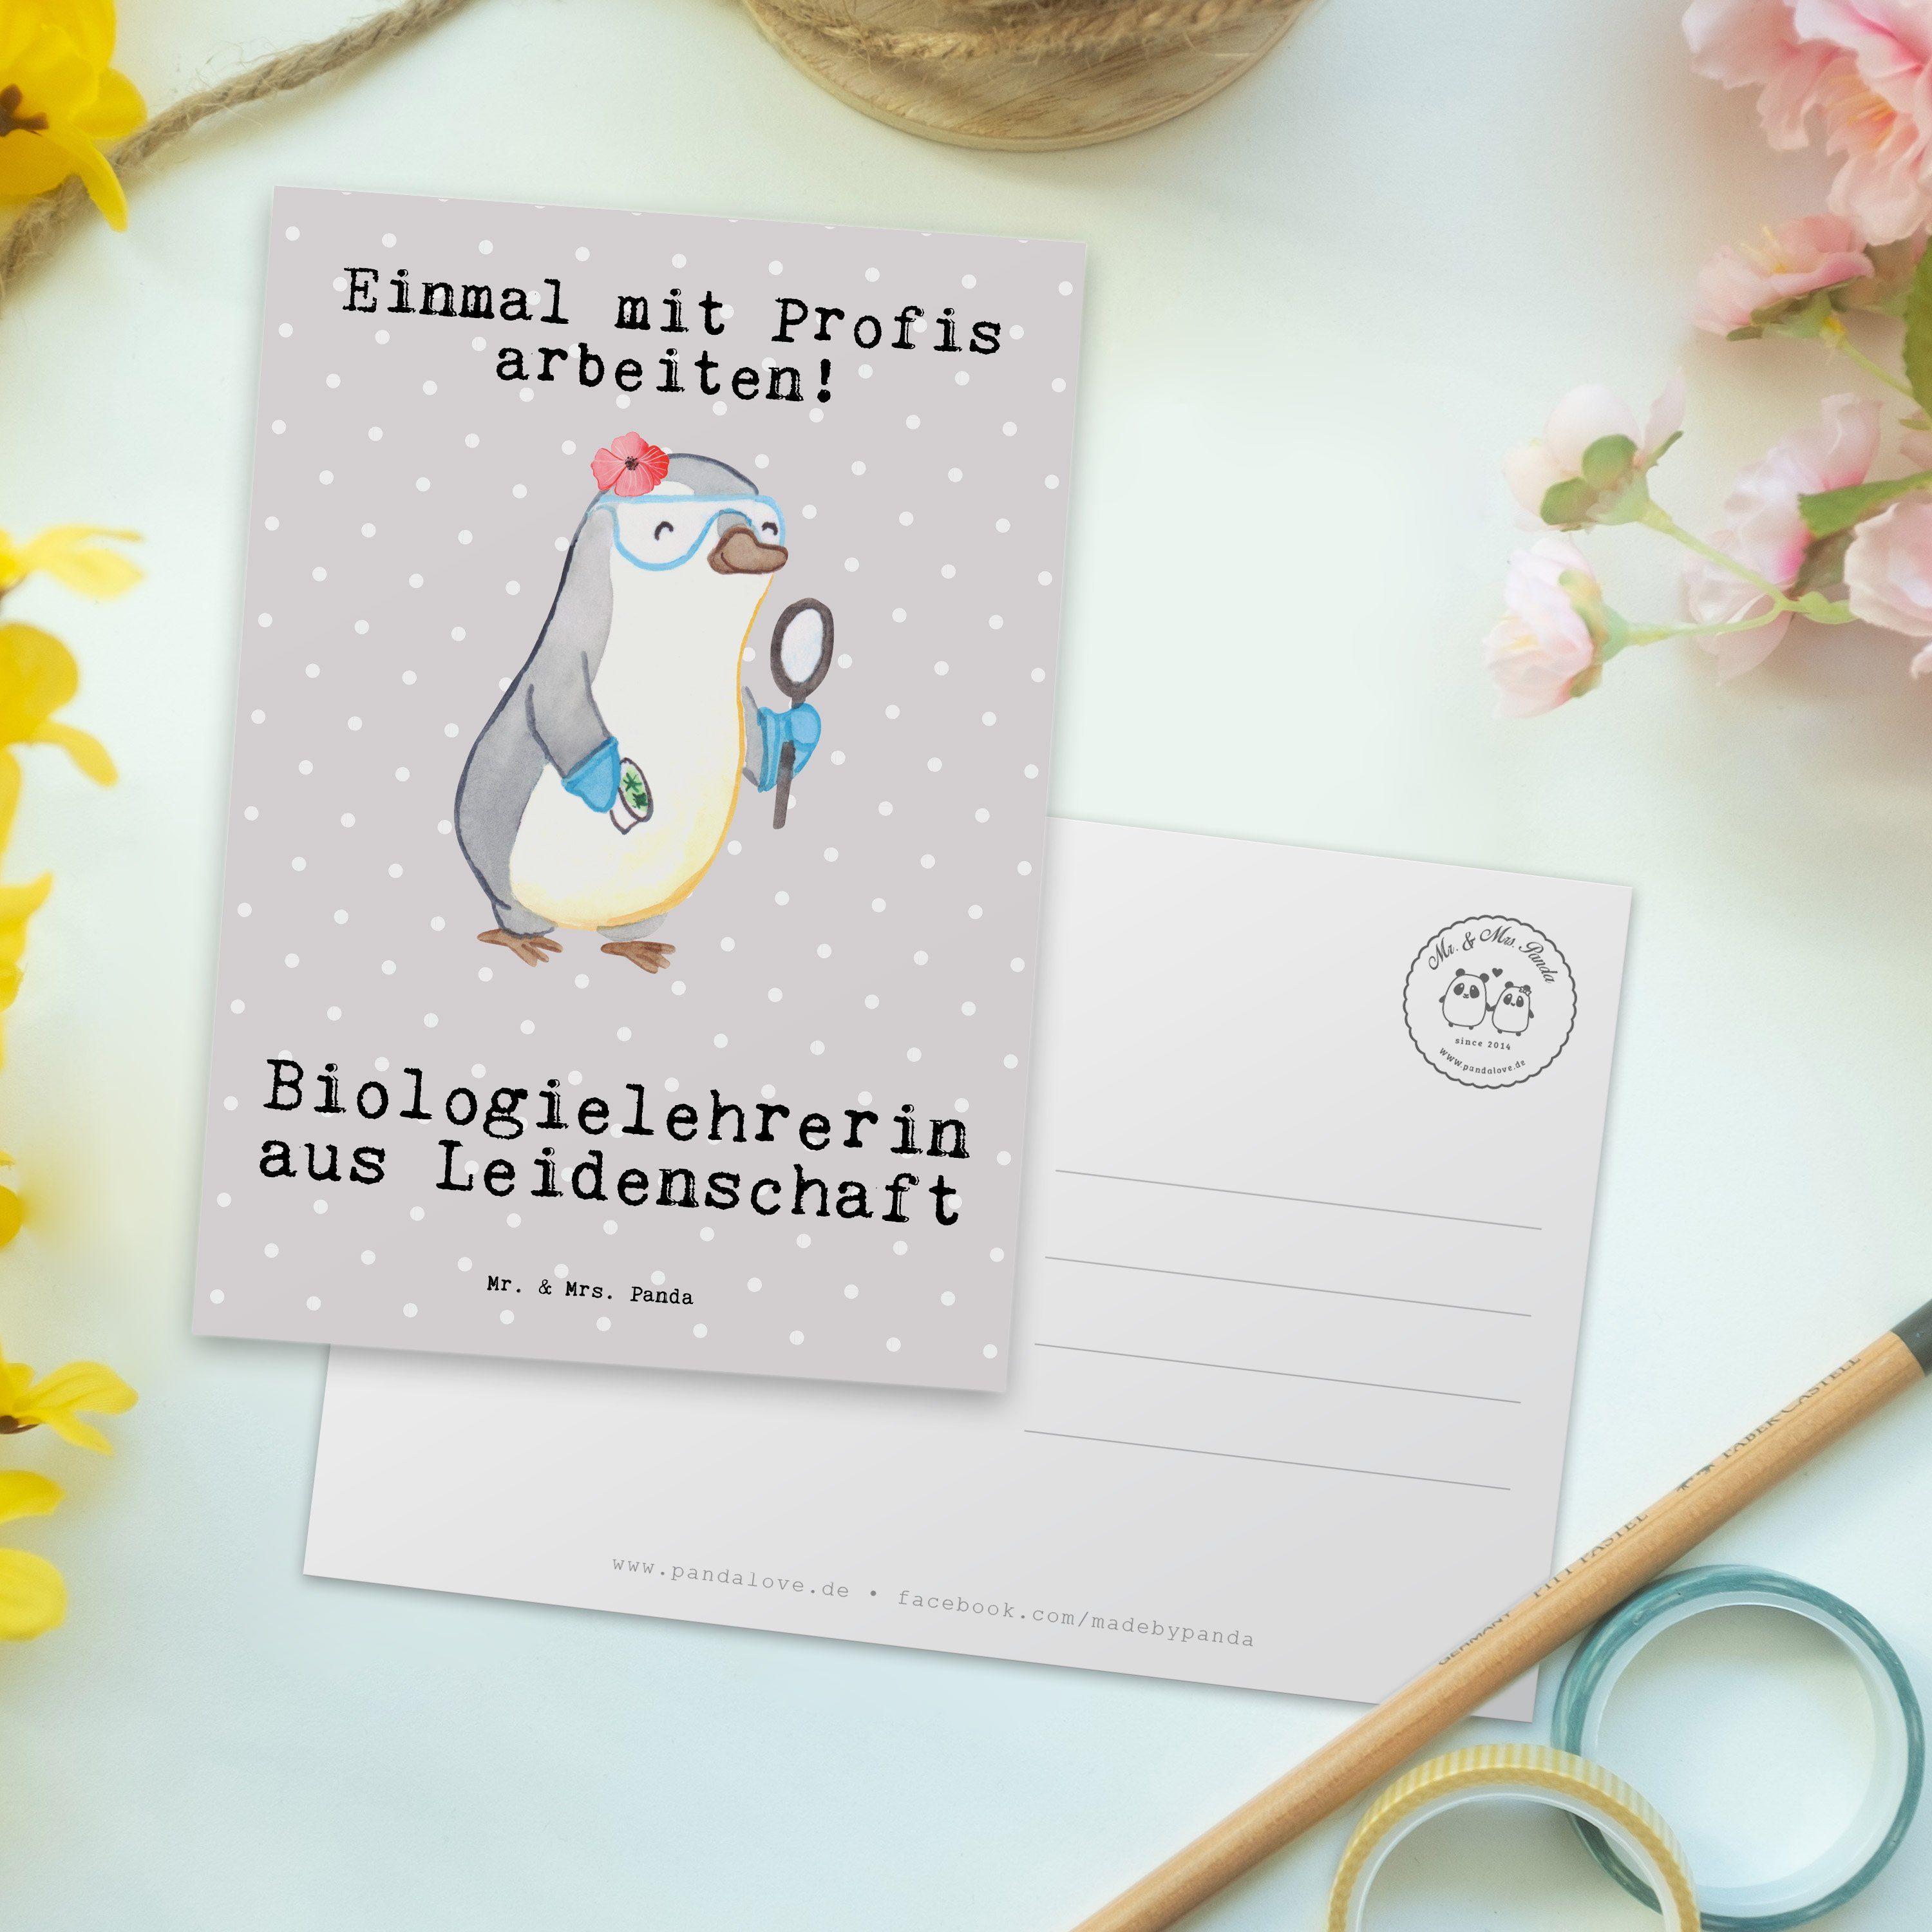 Mr. & Biologielehrerin Pastell Panda - Mrs. aus Arbeitsk Postkarte - Leidenschaft Geschenk, Grau